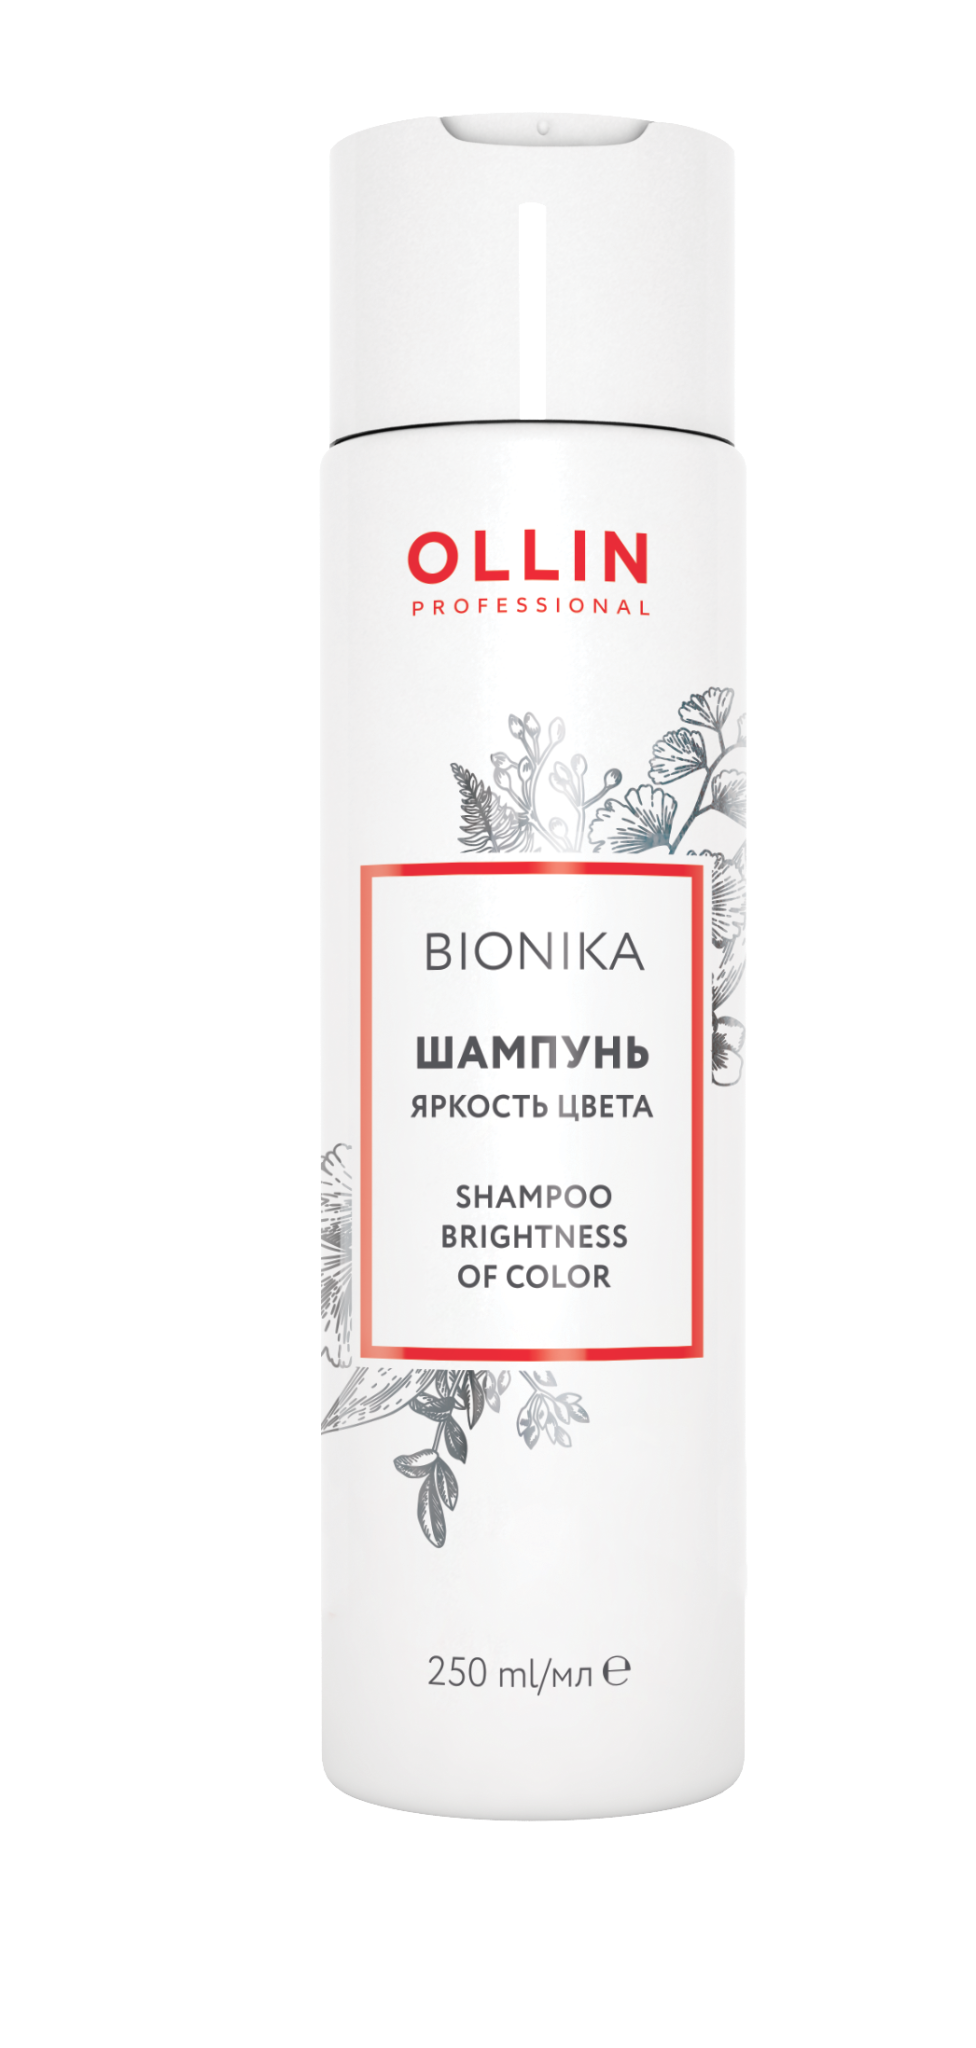 OLLIN Bionika Šampūnas dažytiems plaukams | Spalvos ryškumas 250 ml